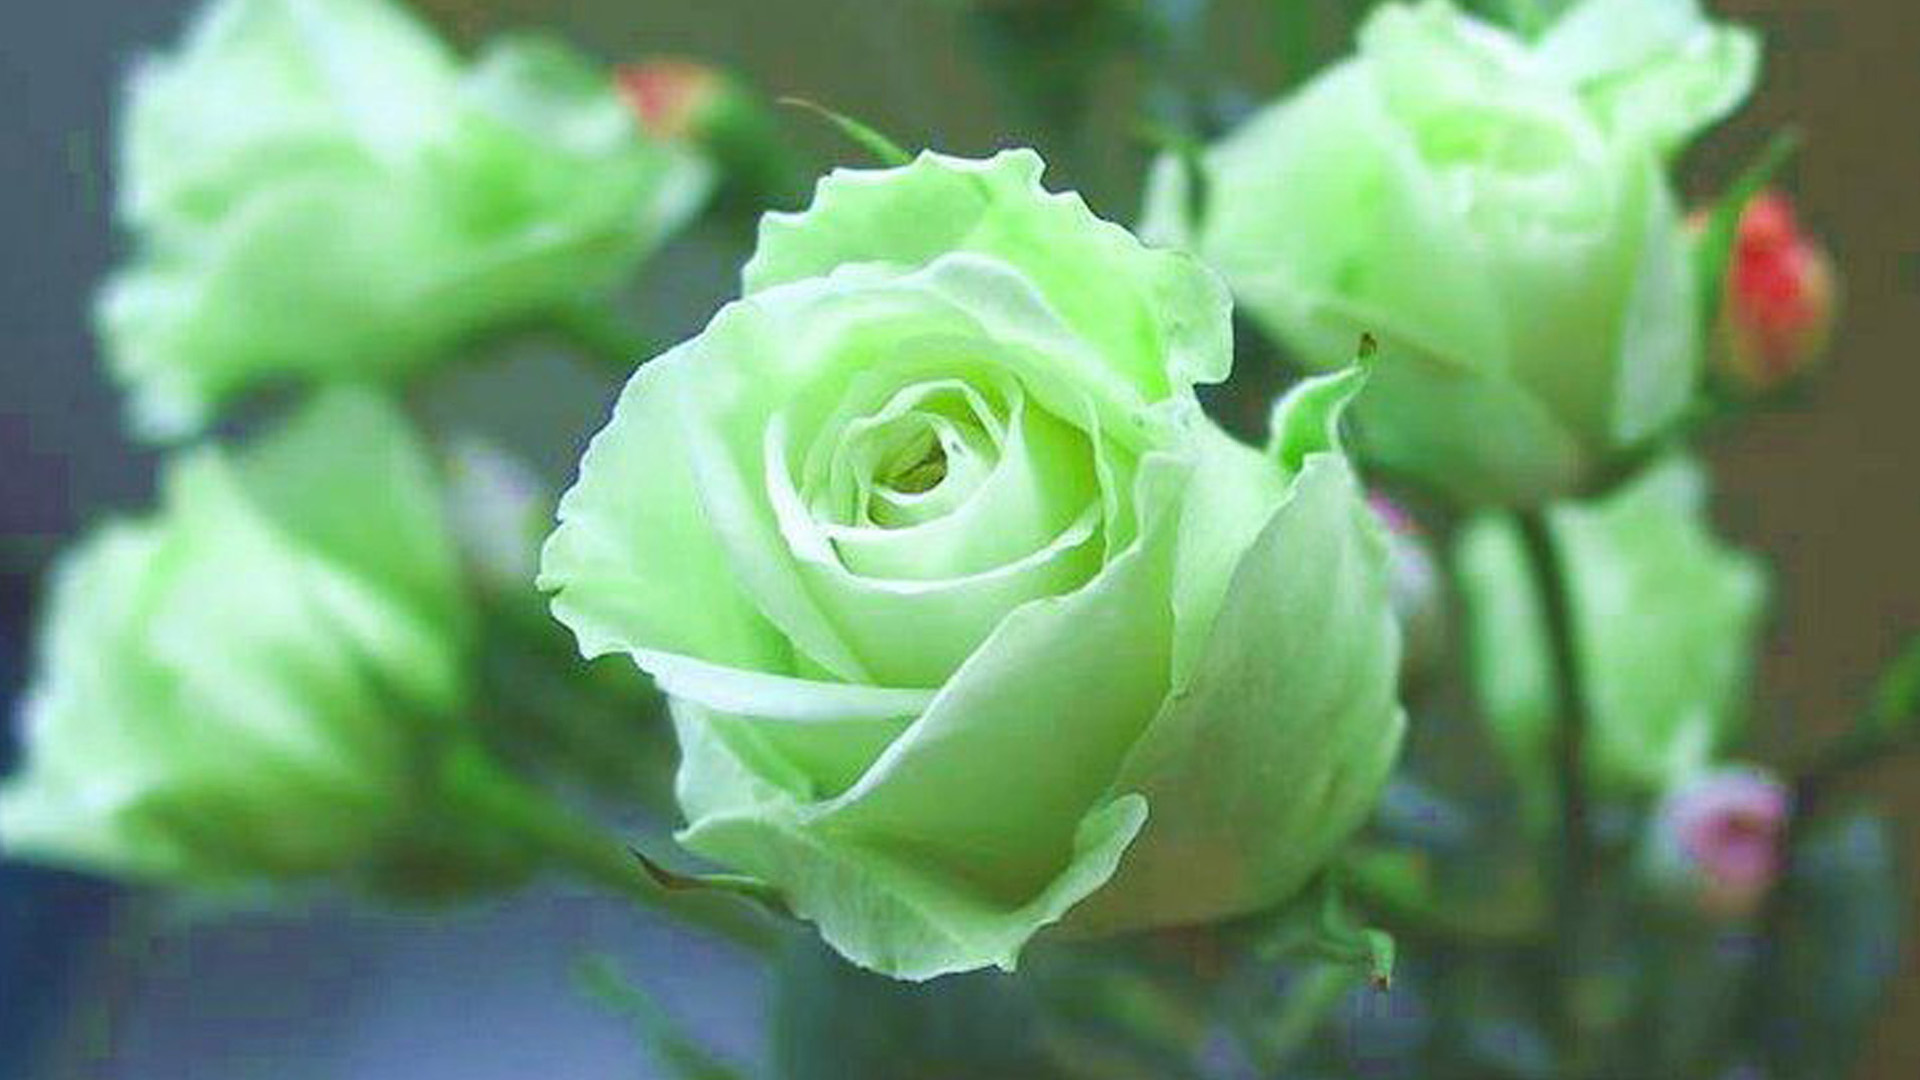 Green Rose Wallpaper - Green Rose Flower Images Hd - 1920x1080 Wallpaper -  